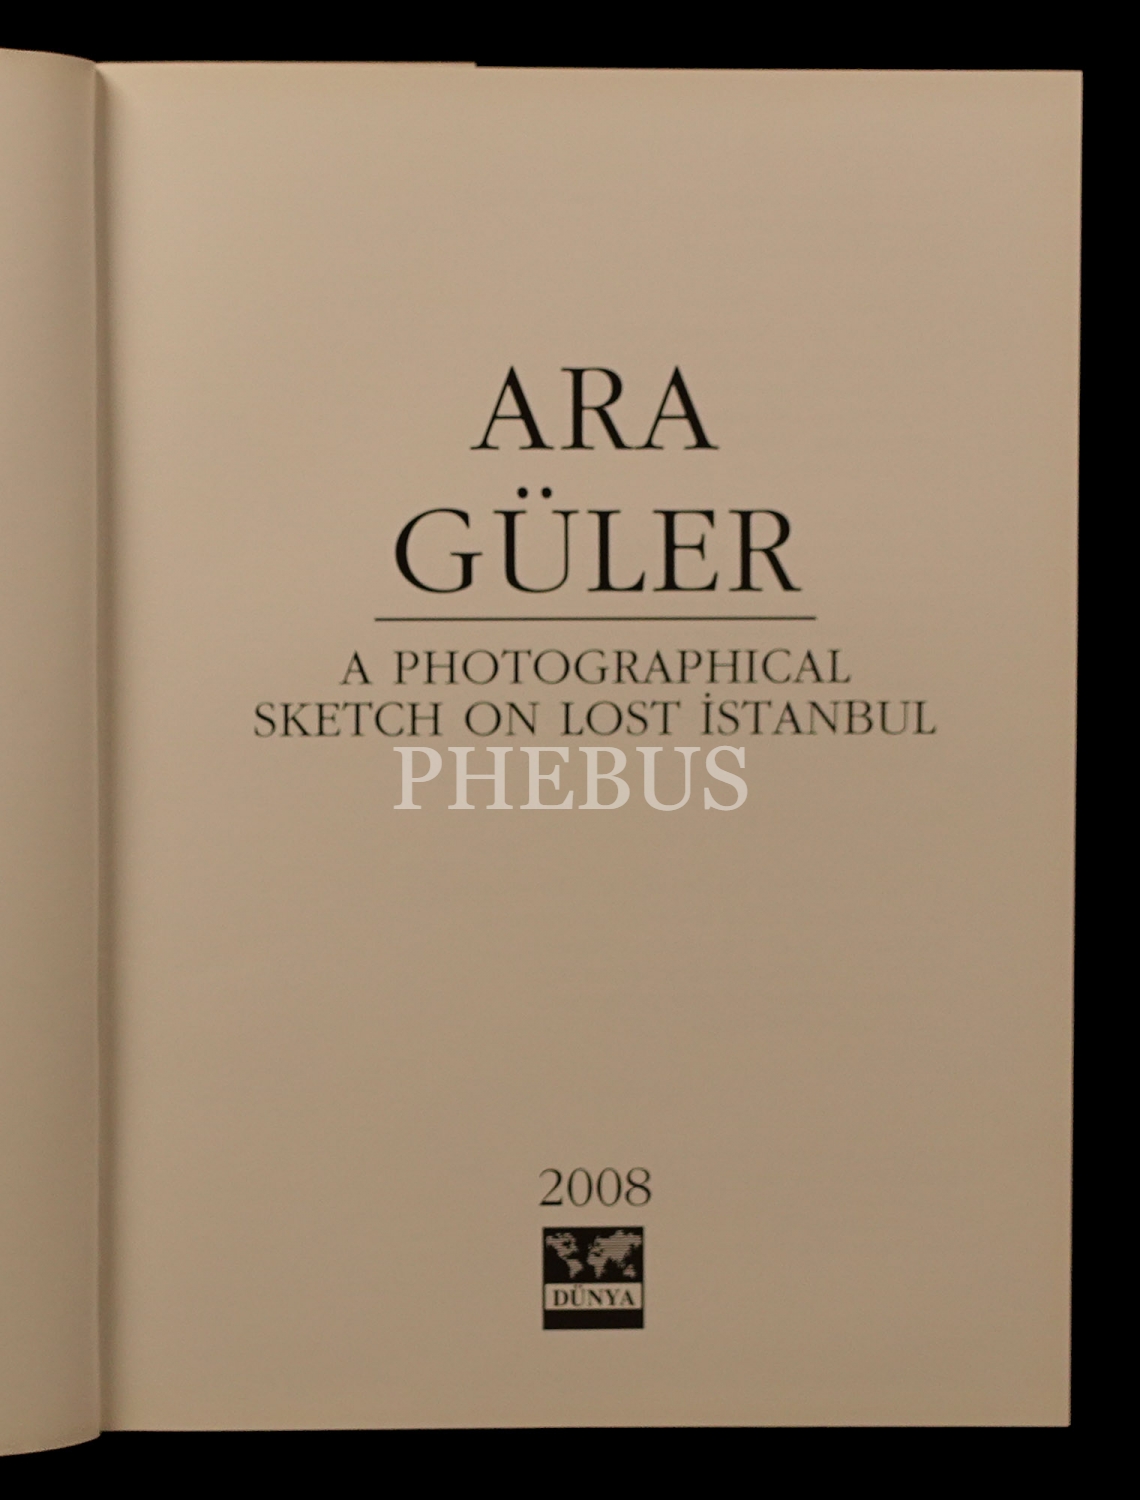 A PHOTOGRAPHICAL SKETCH ON LOST ISTANBUL (1950-1990), Ara Güler, 2008, Dünya Şirketler Grubu, 189 sayfa, 26x33 cm...